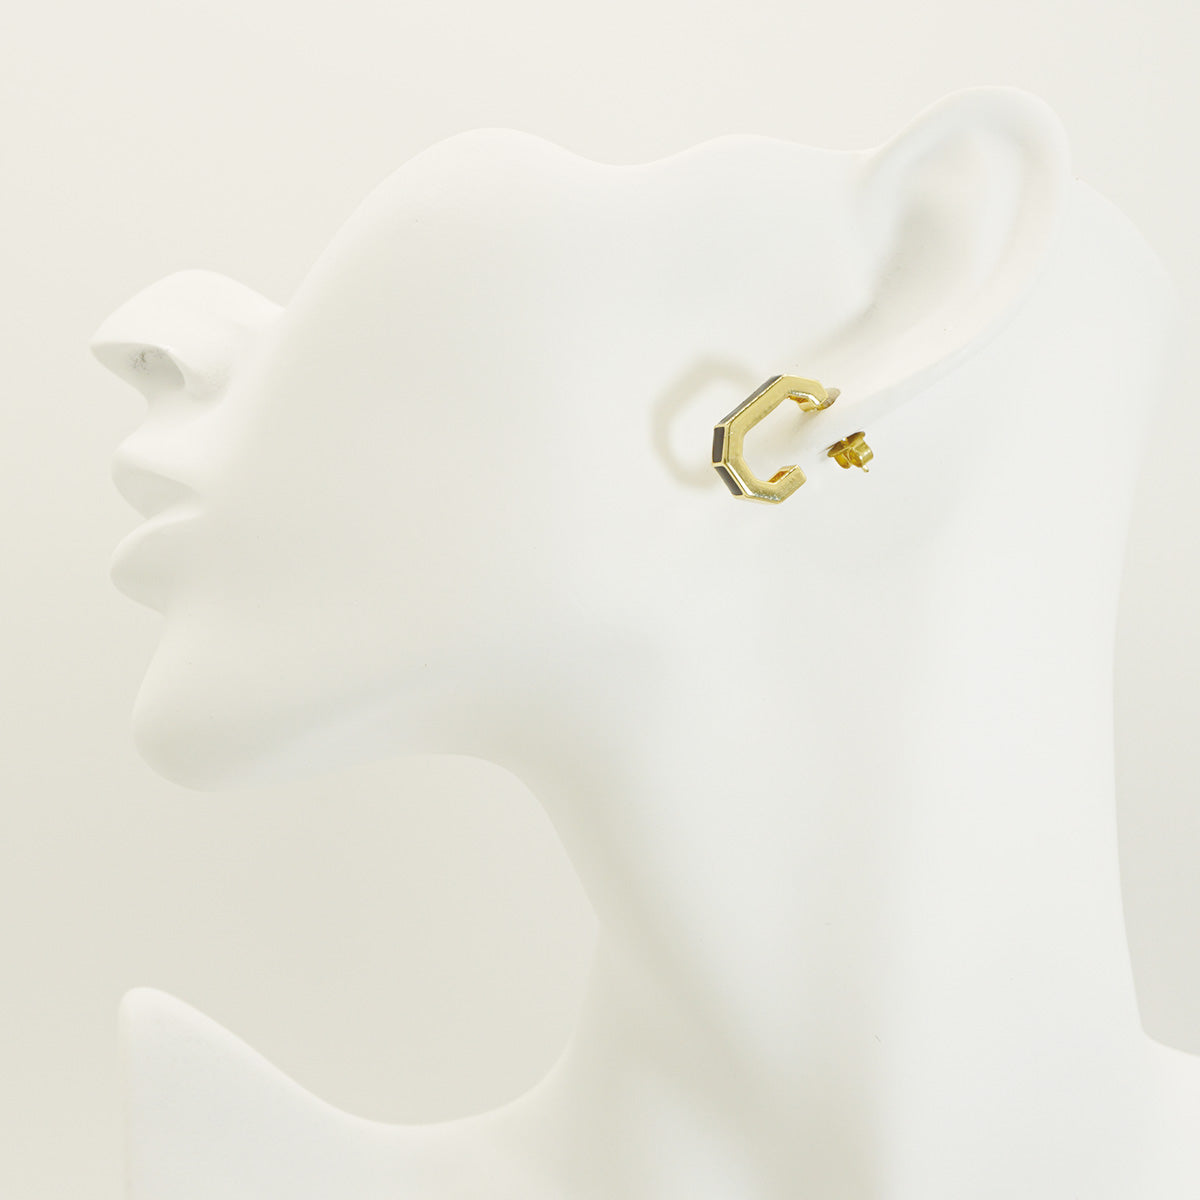 Black J Letter Shape Gold Stud Earrings